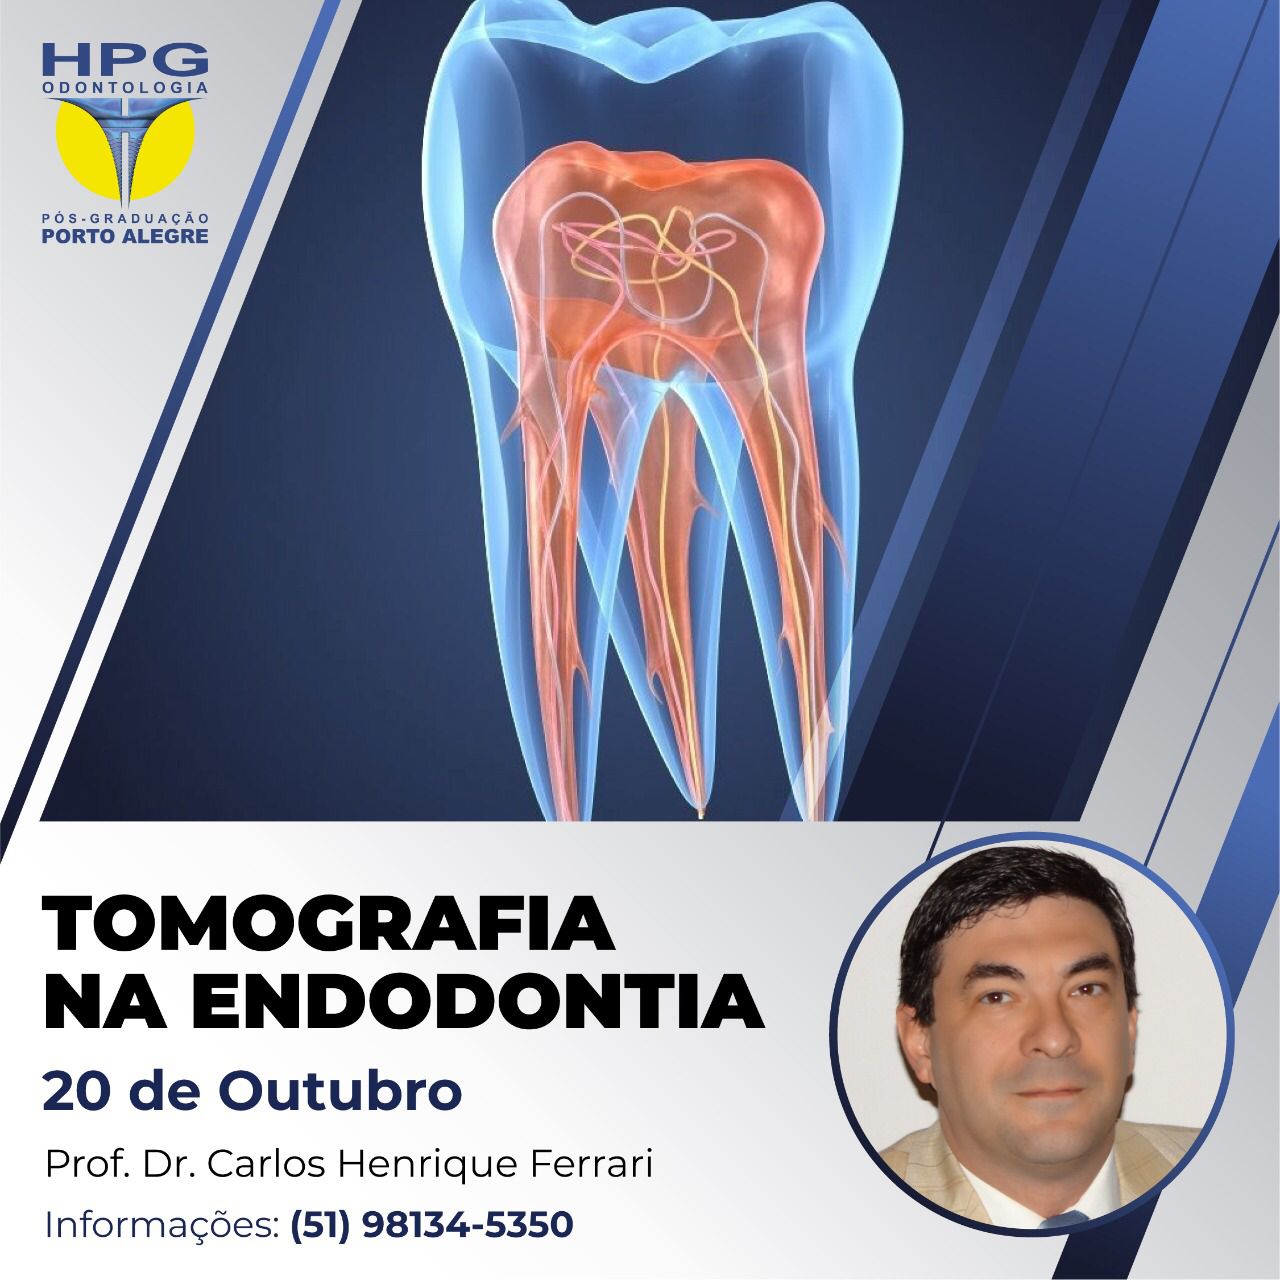 You are currently viewing Tomografia cone beam na Endodontia, presencial em Porto Alegre.